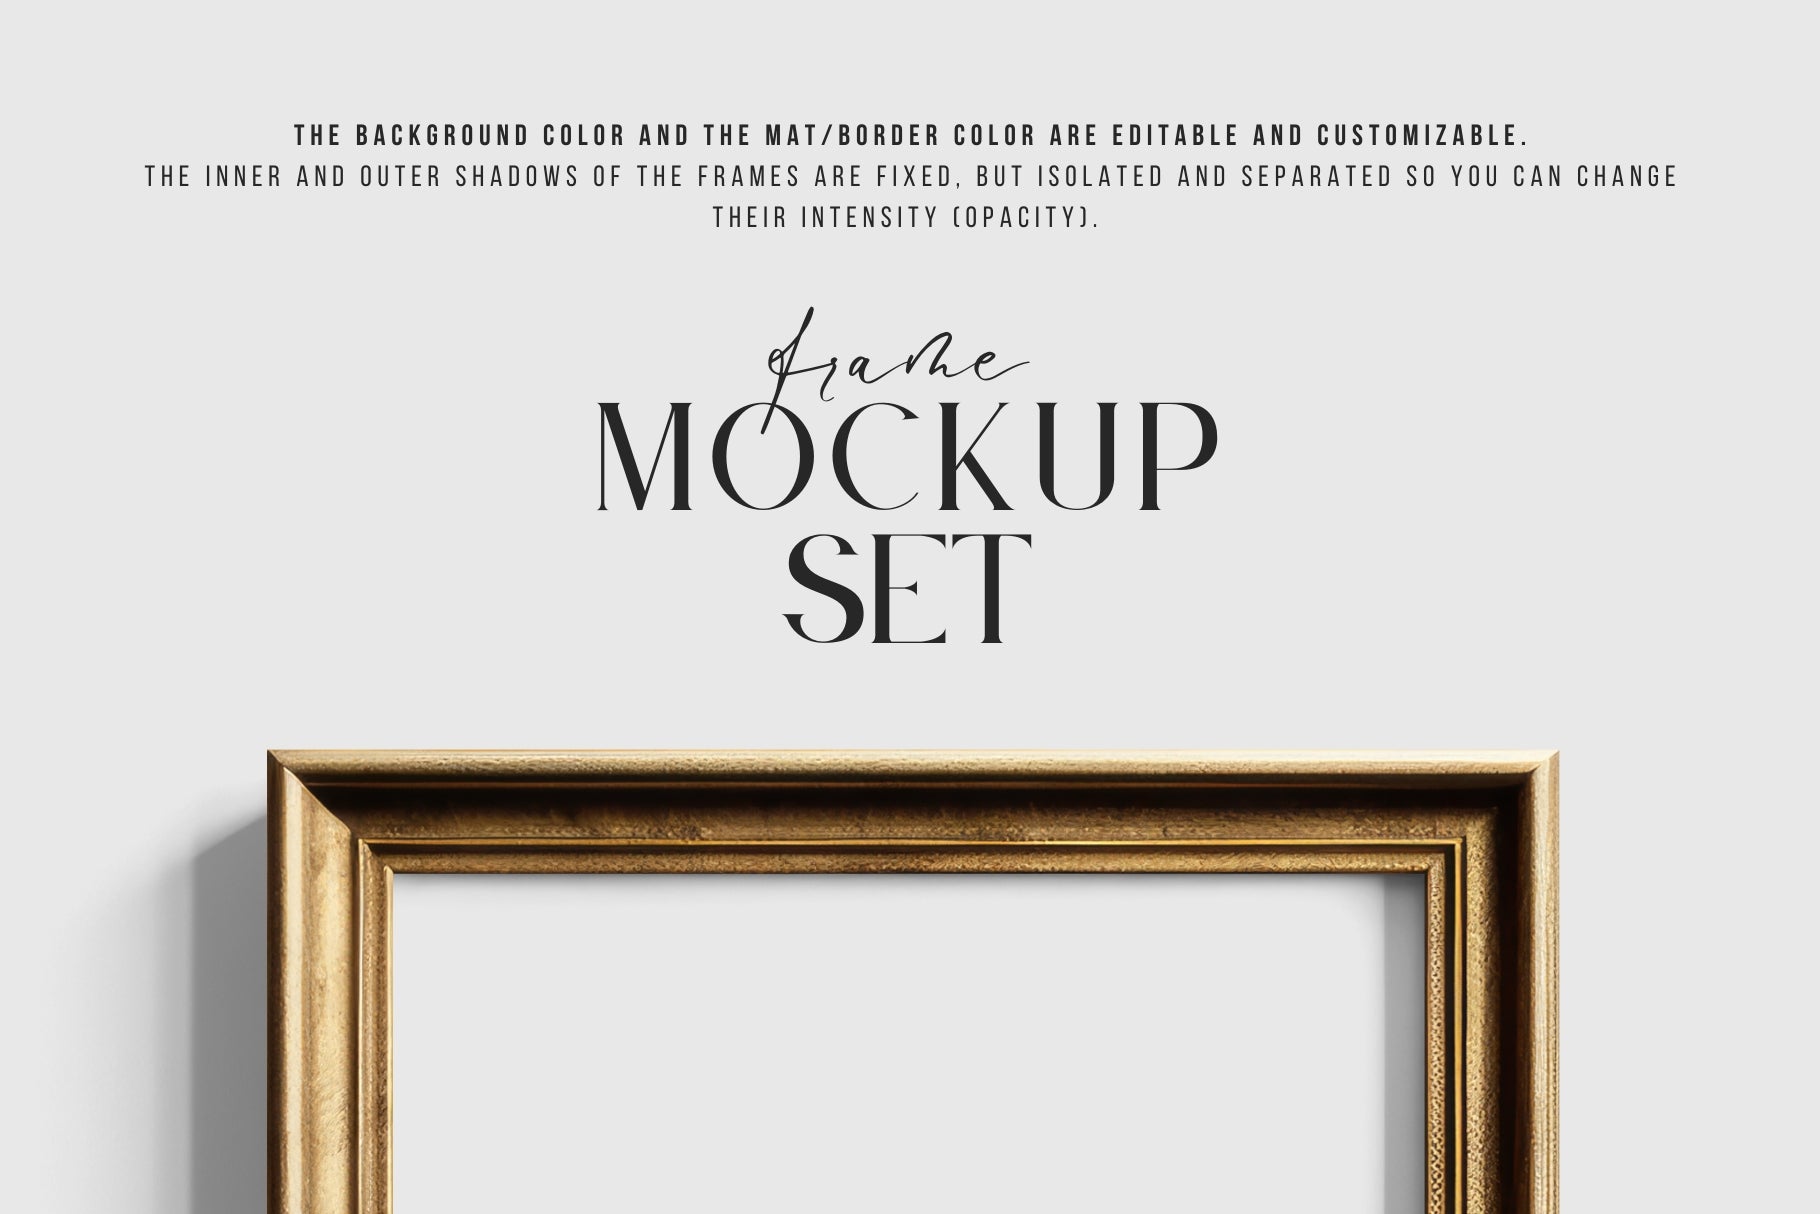 Metallic Frame Mockup Set of 2 Vertical Frames 3:4 | Vintage Gold Frame Mockup Set | PSD Template + Transparent PNG Files